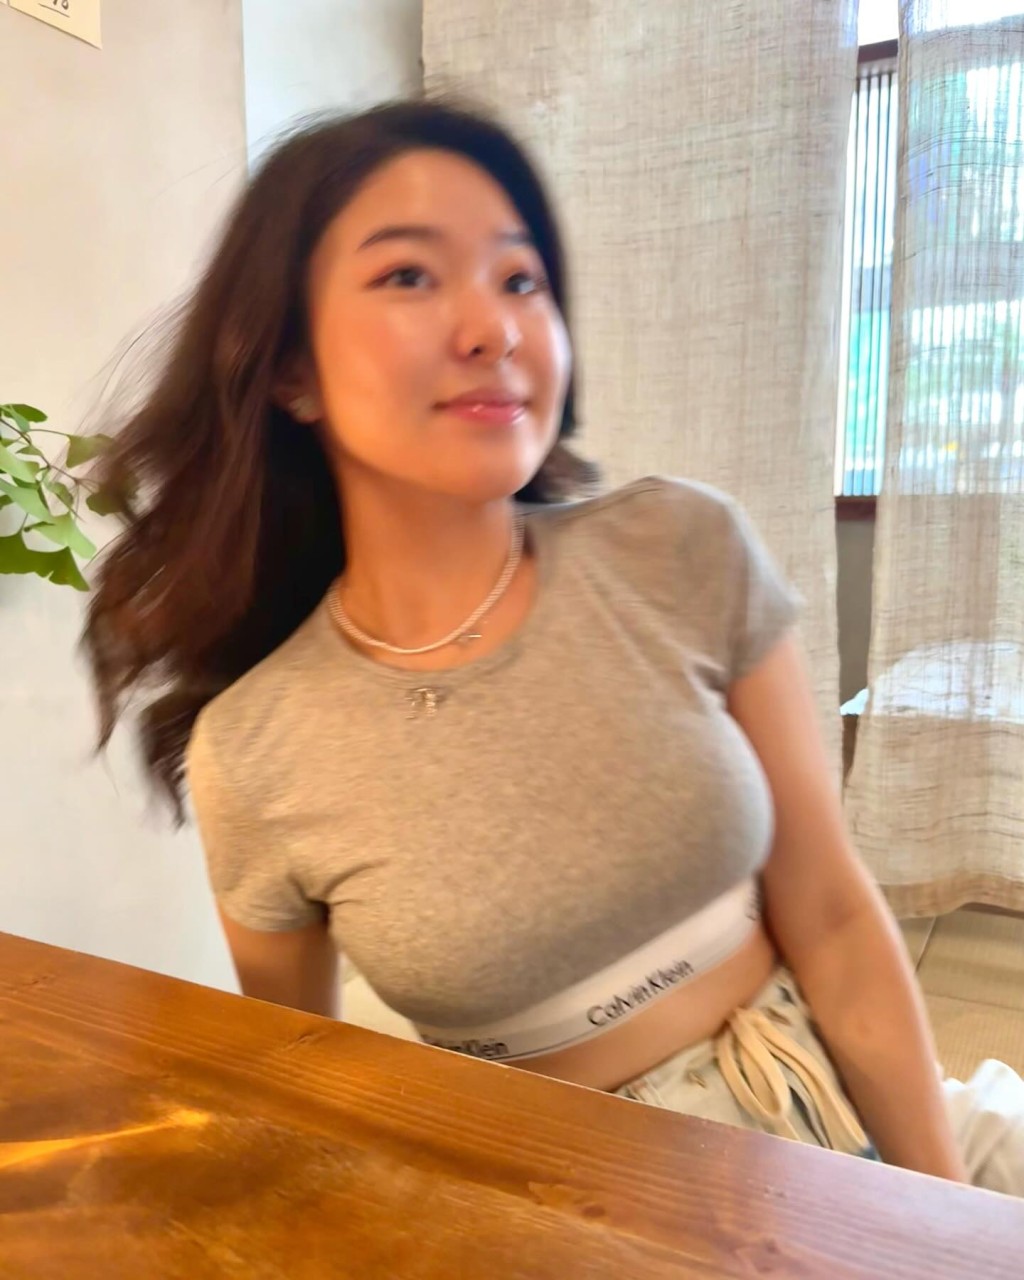 許惠菁昨日（2日）分享一輯身穿緊身Crop top的照片。